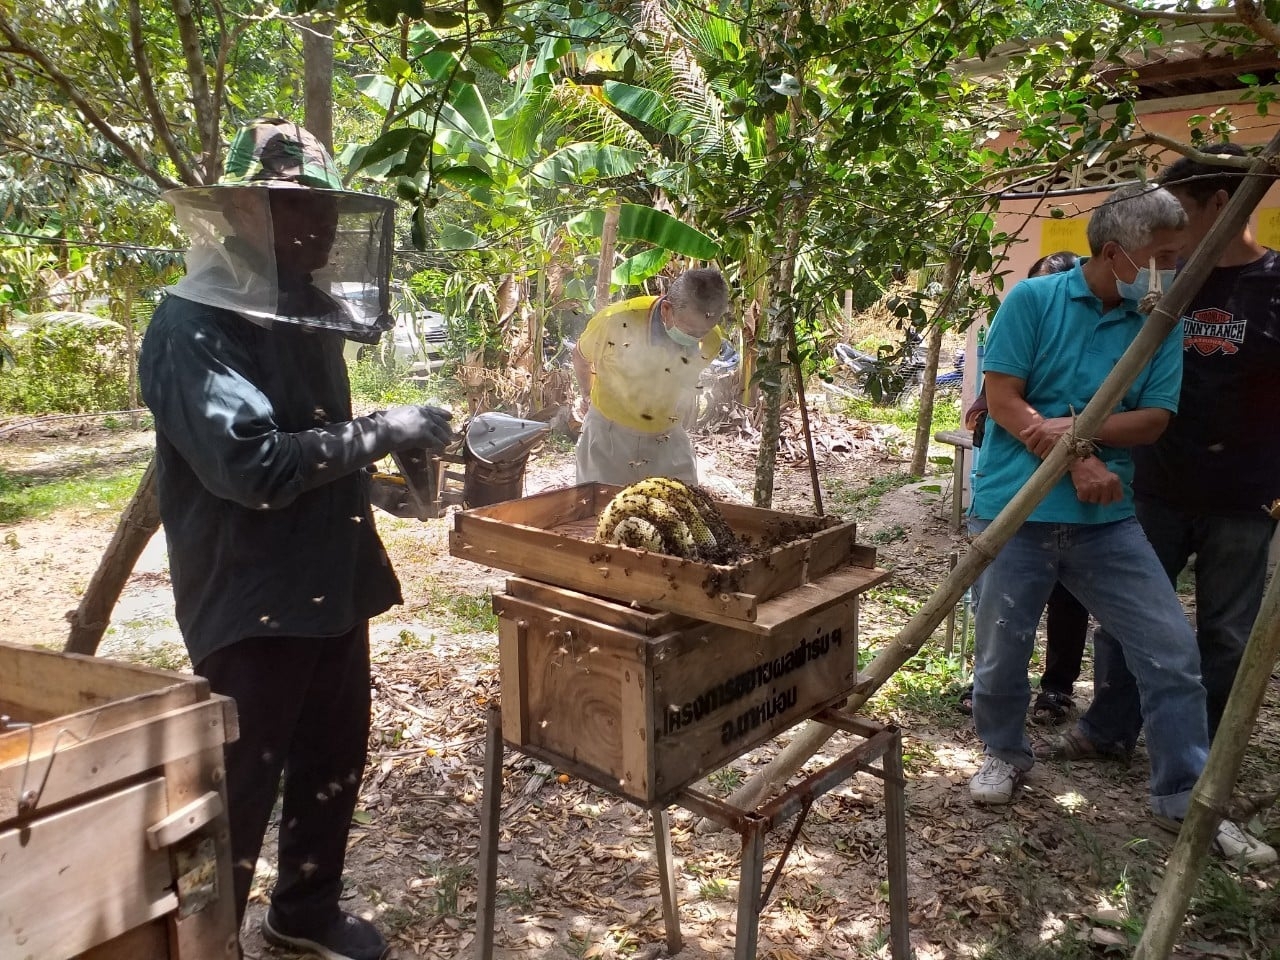 กรมส่งเสริมการเกษตร เชิญชมการถ่ายทอดสดงานวันผึ้งโลก